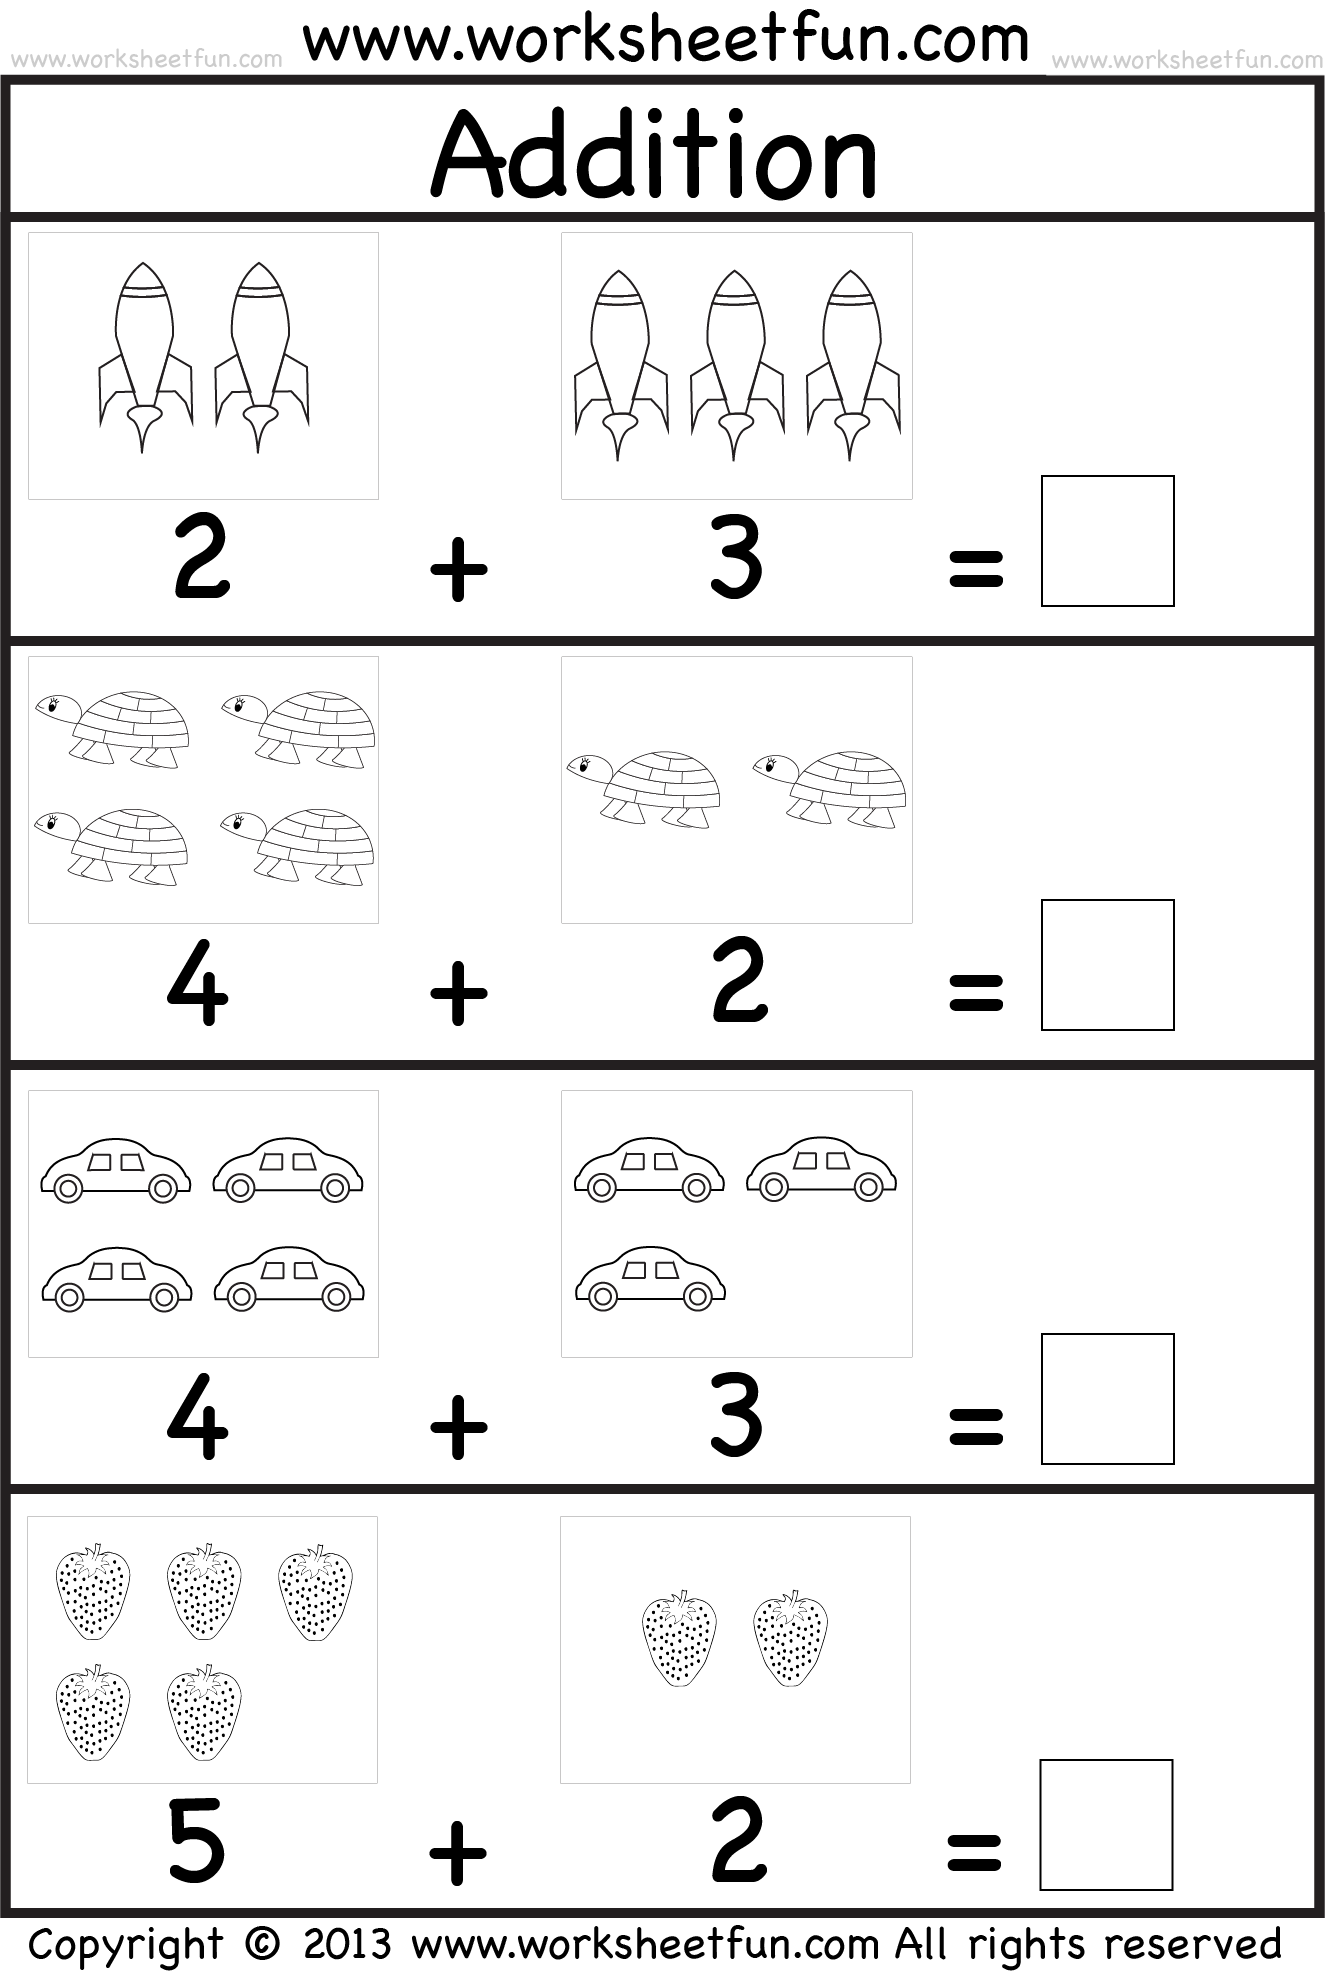 picture-addition-beginner-addition-kindergarten-addition-5